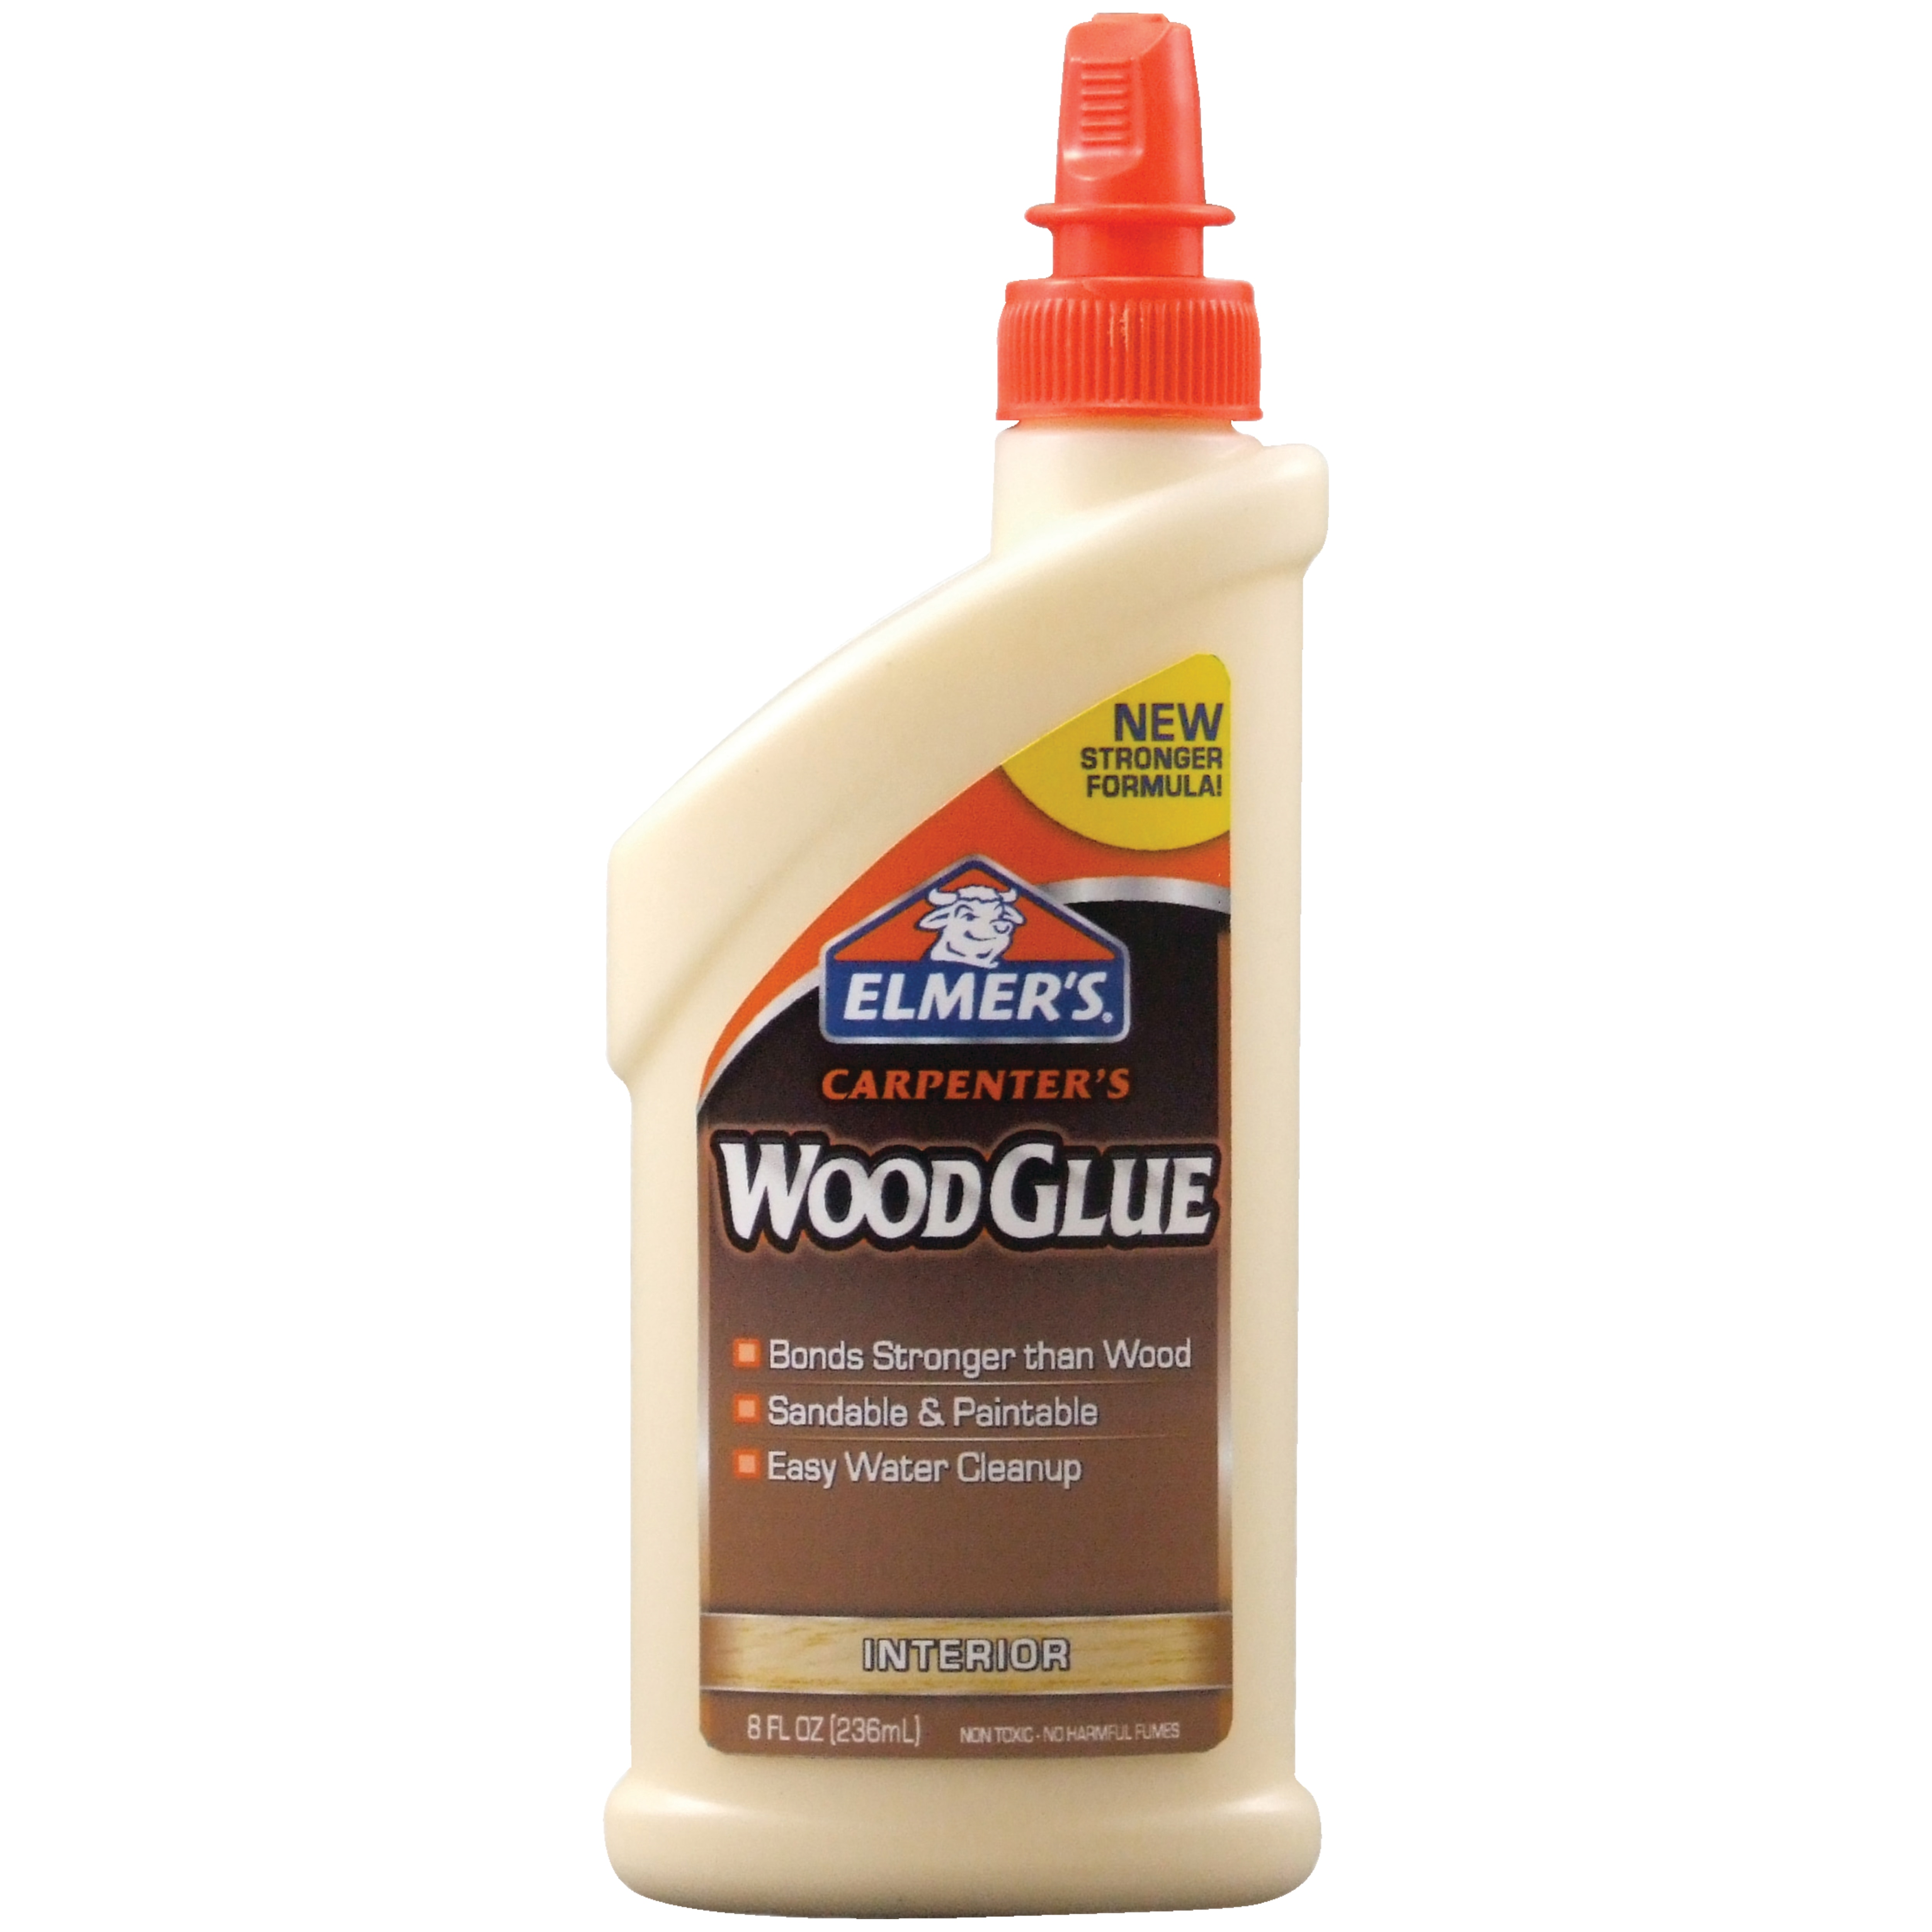 Elmer's Carpenter's Wood Glue, 8 oz.